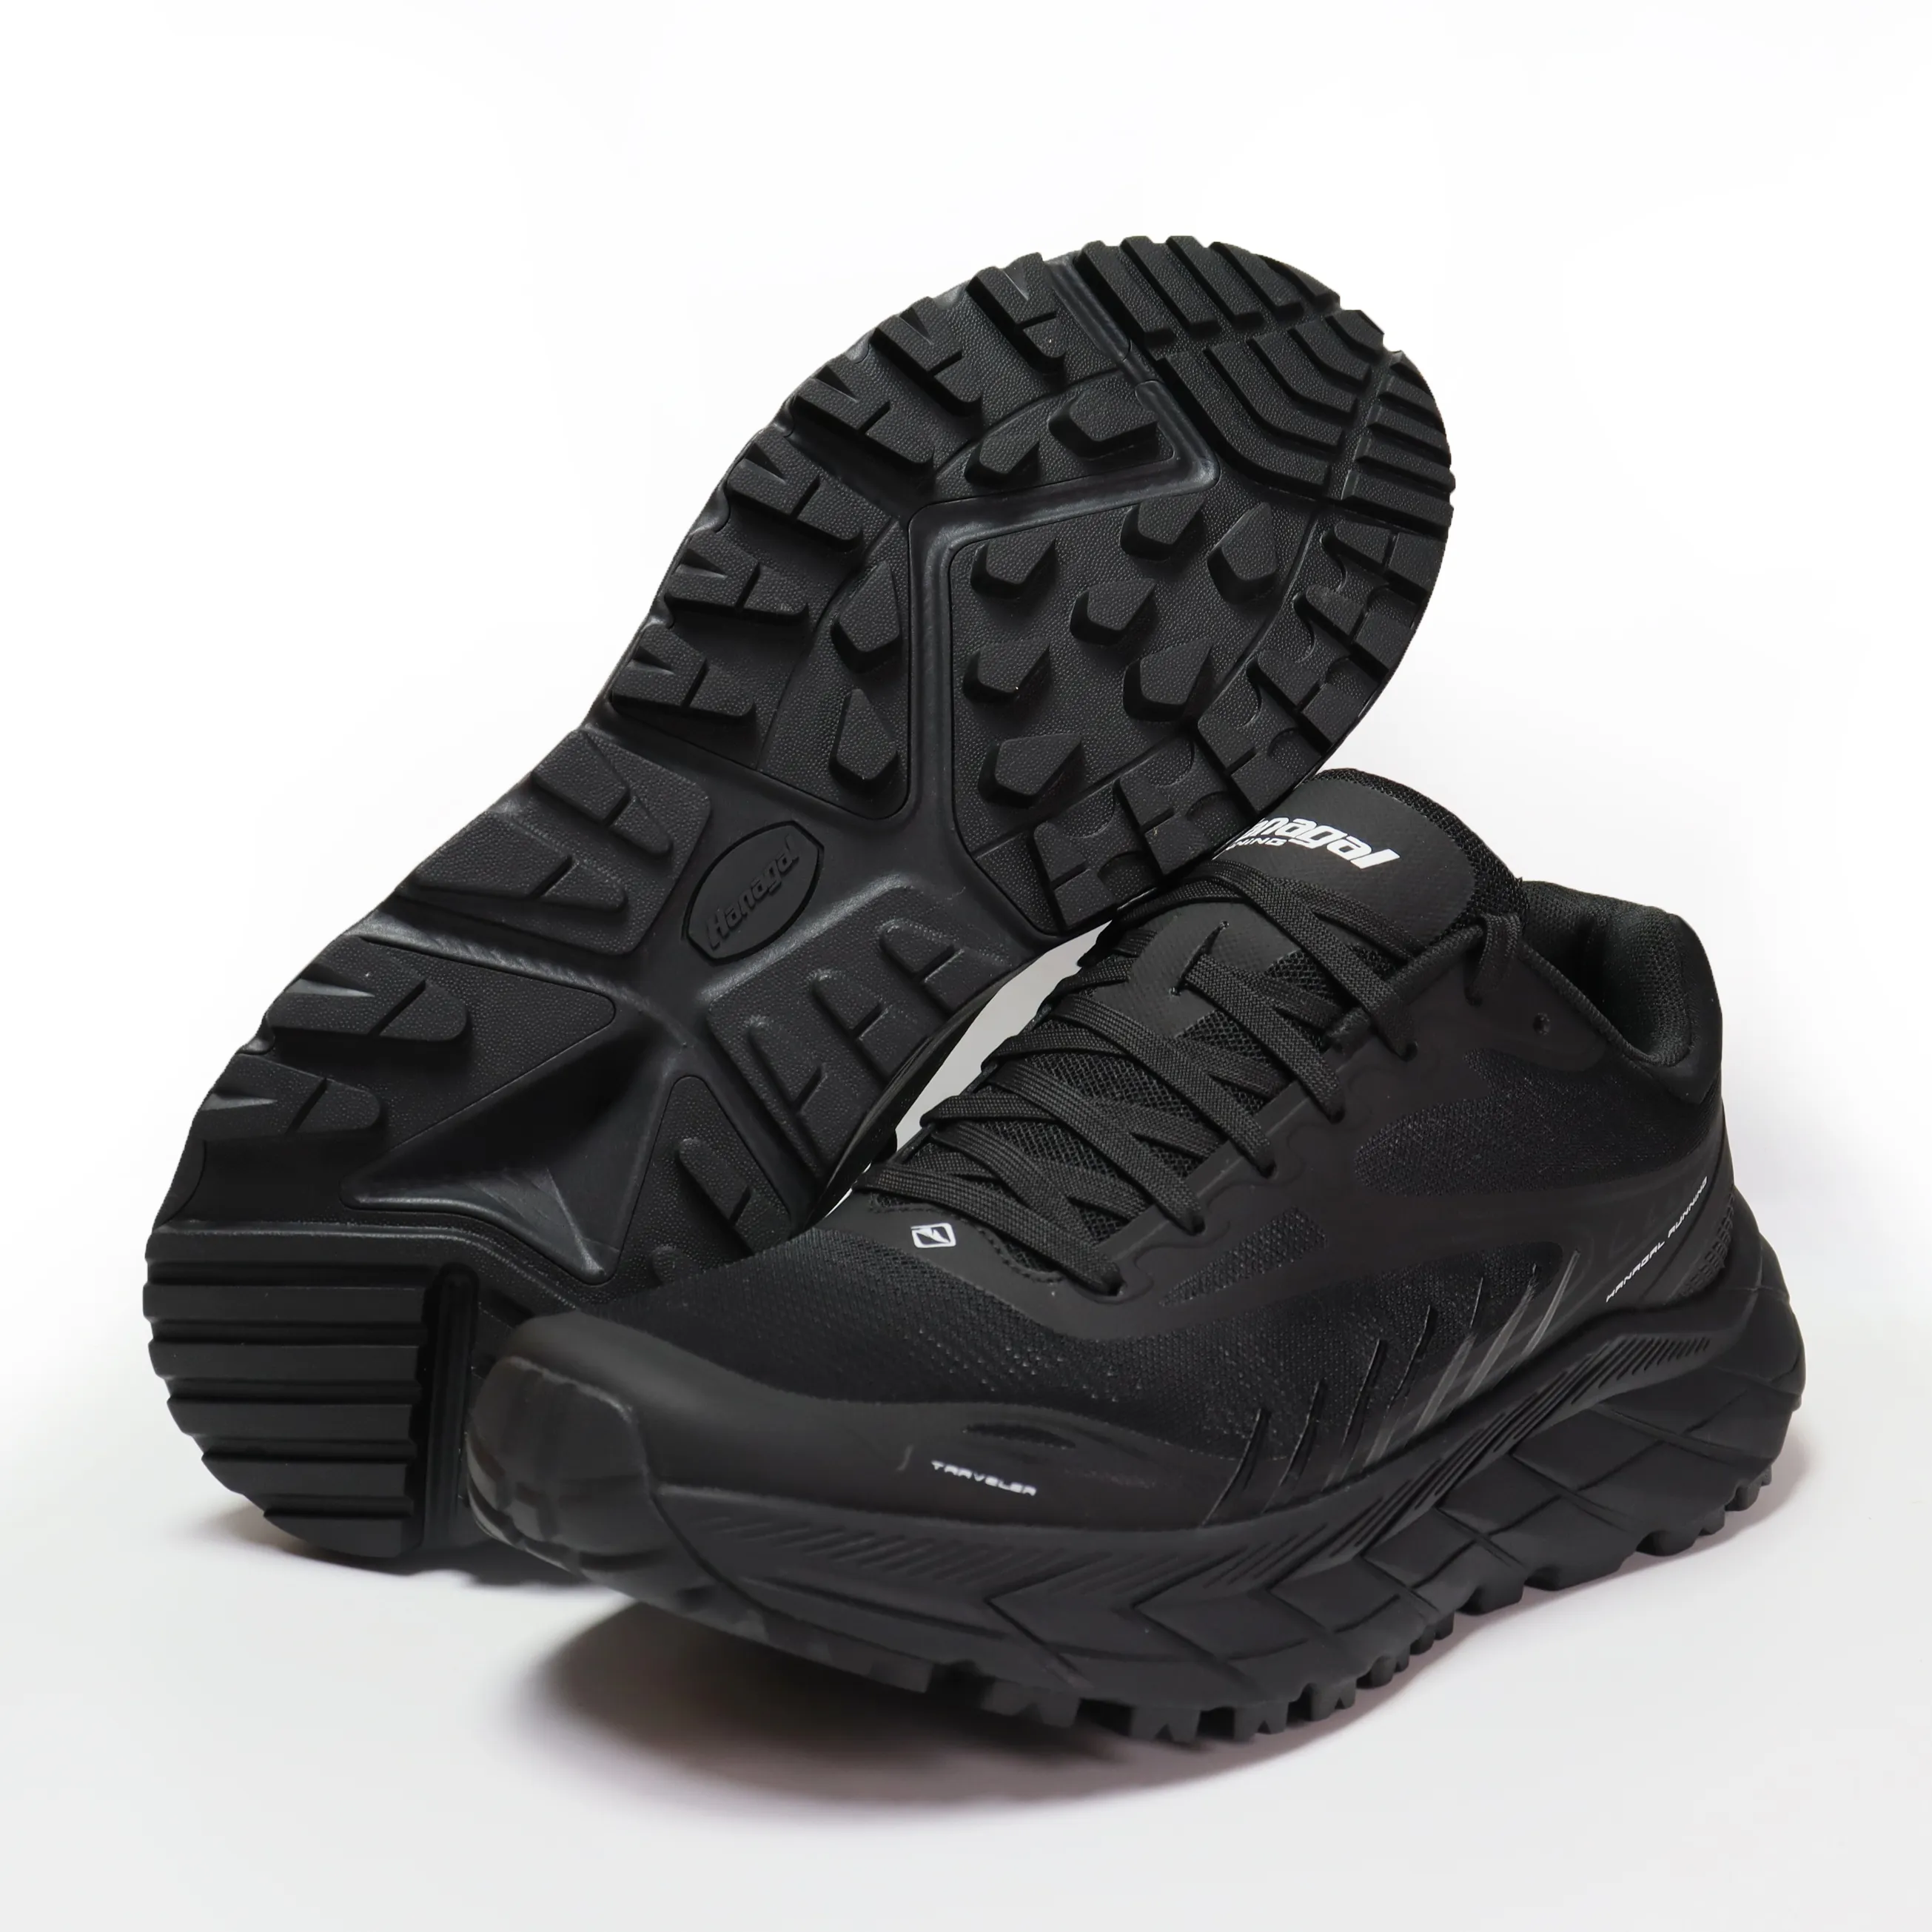 Mới Ra mắt thời trang Trọng lượng nhẹ EVA Sneakers người đàn ông ngoài trời Giày chạy cho nam giới và phụ nữ